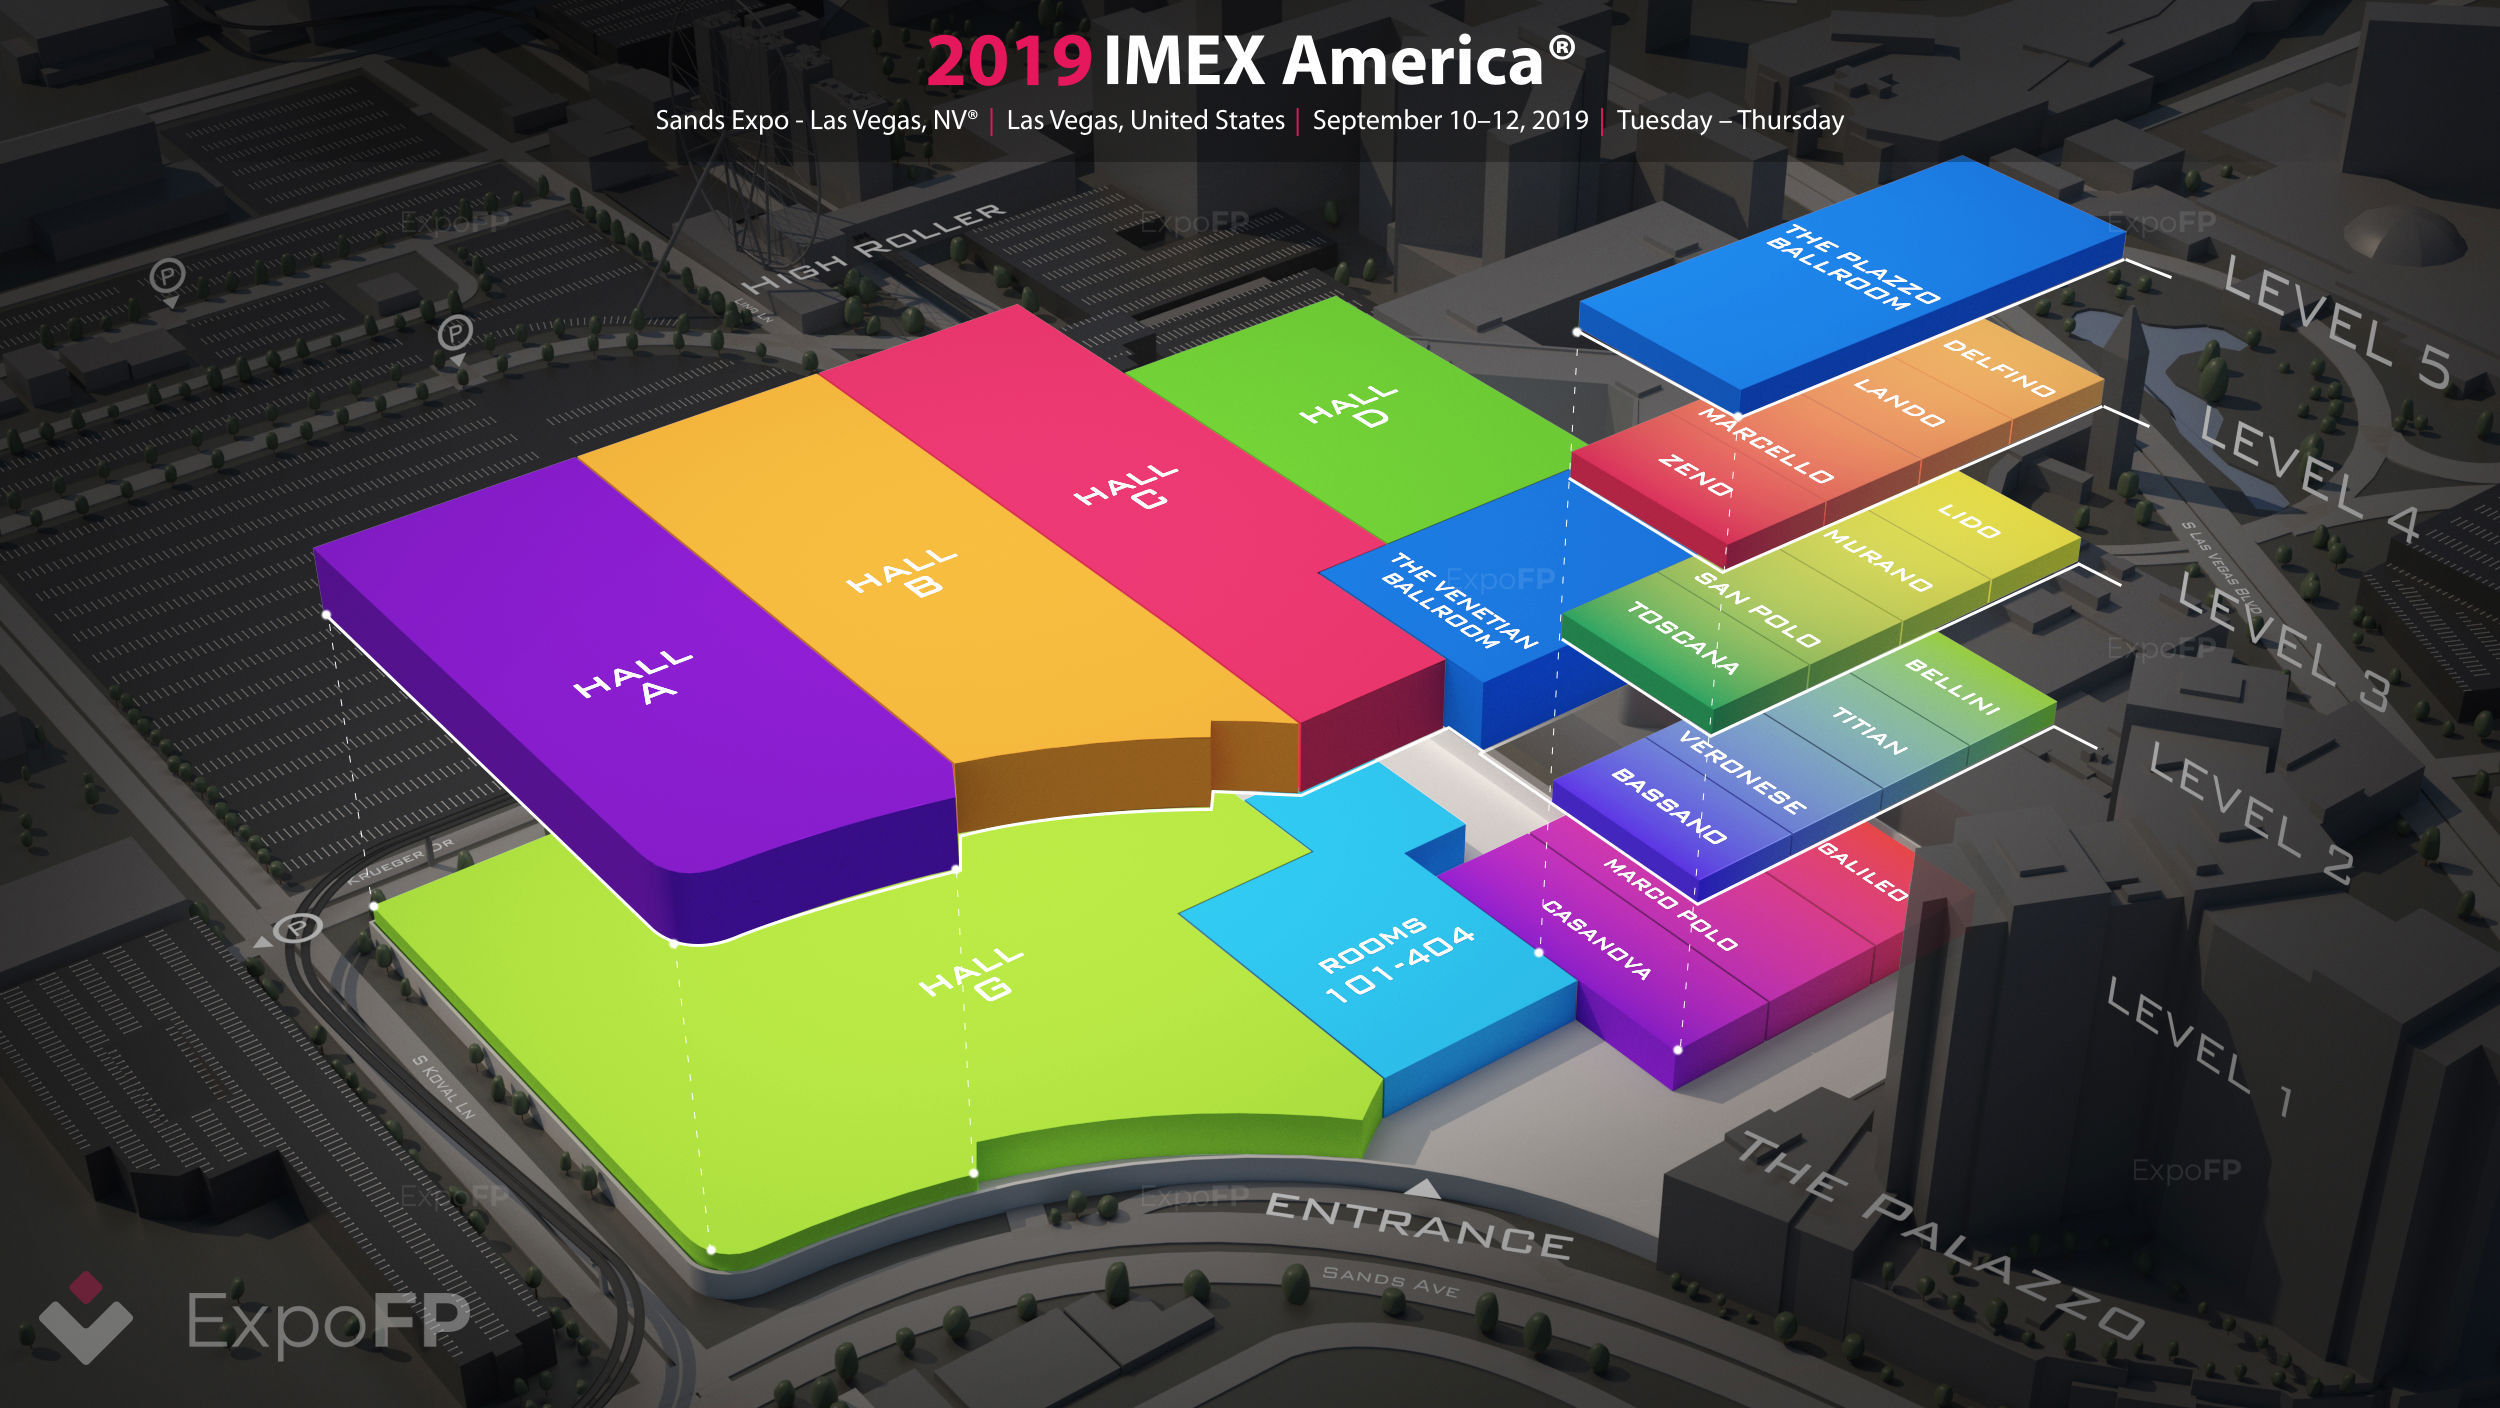 IMEX America 2019 in Sands Expo Las Vegas, NV